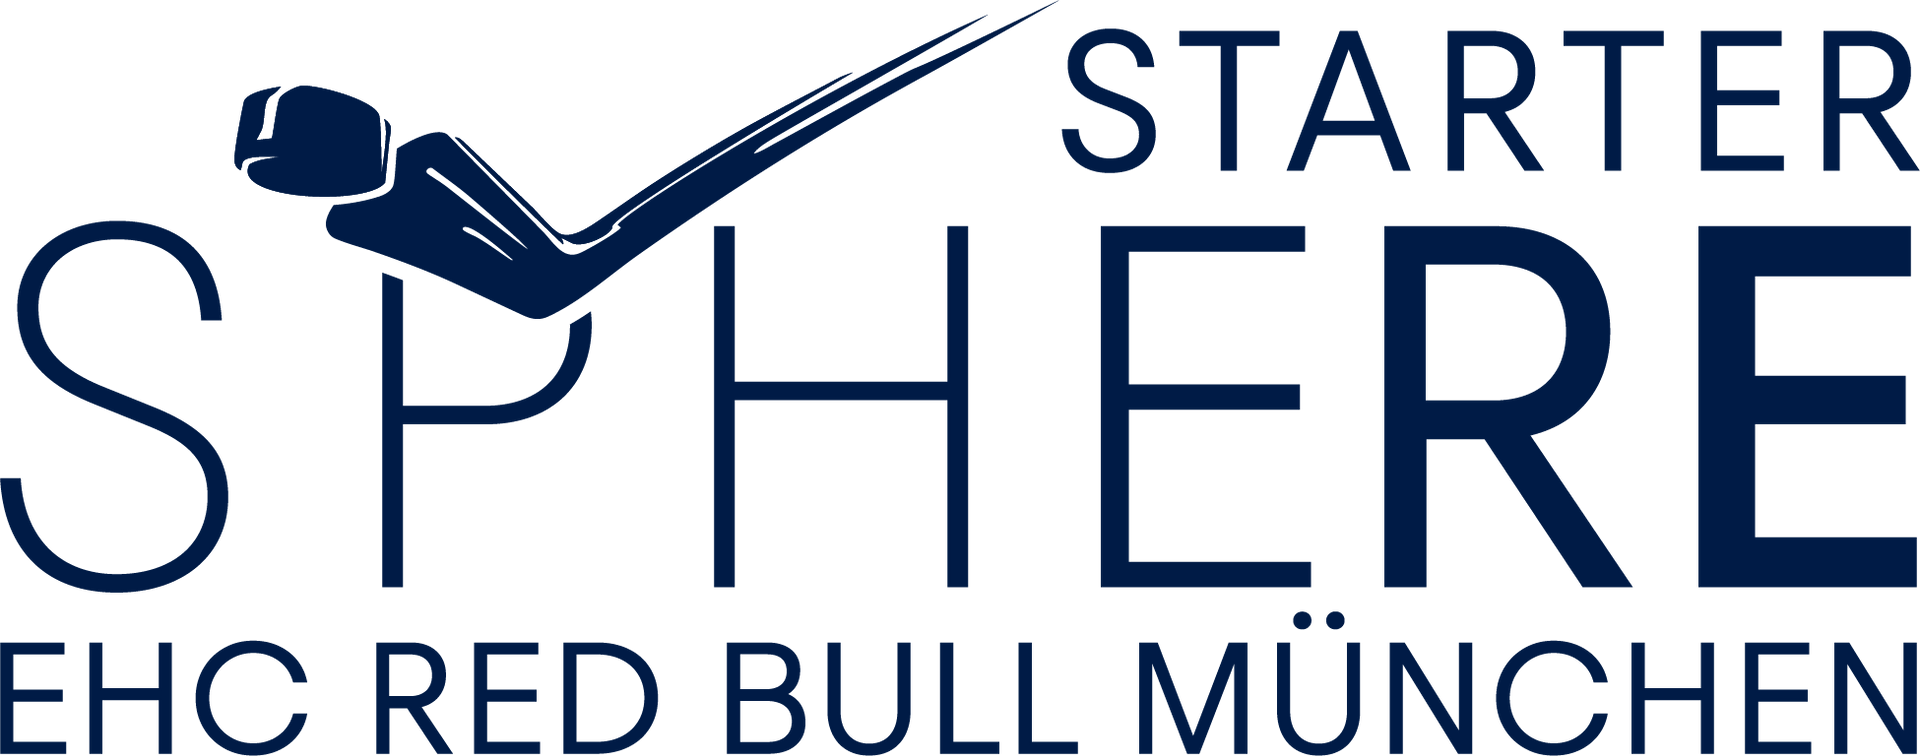 Sponsoring EHC Red Bull München Starter Sphere